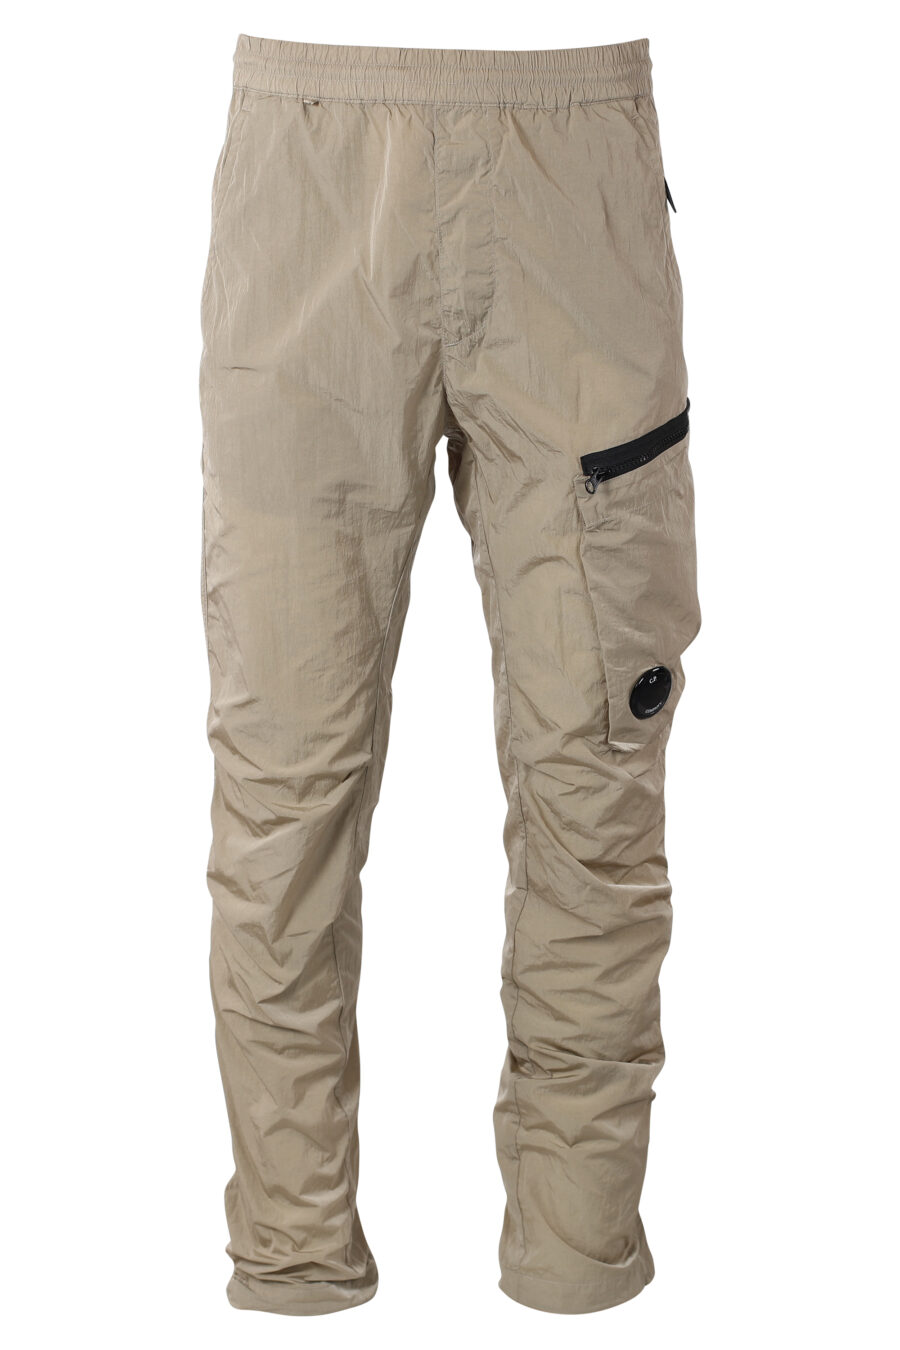 C.P. Company - Pantalón beige con bolsillo lateral diagonal y